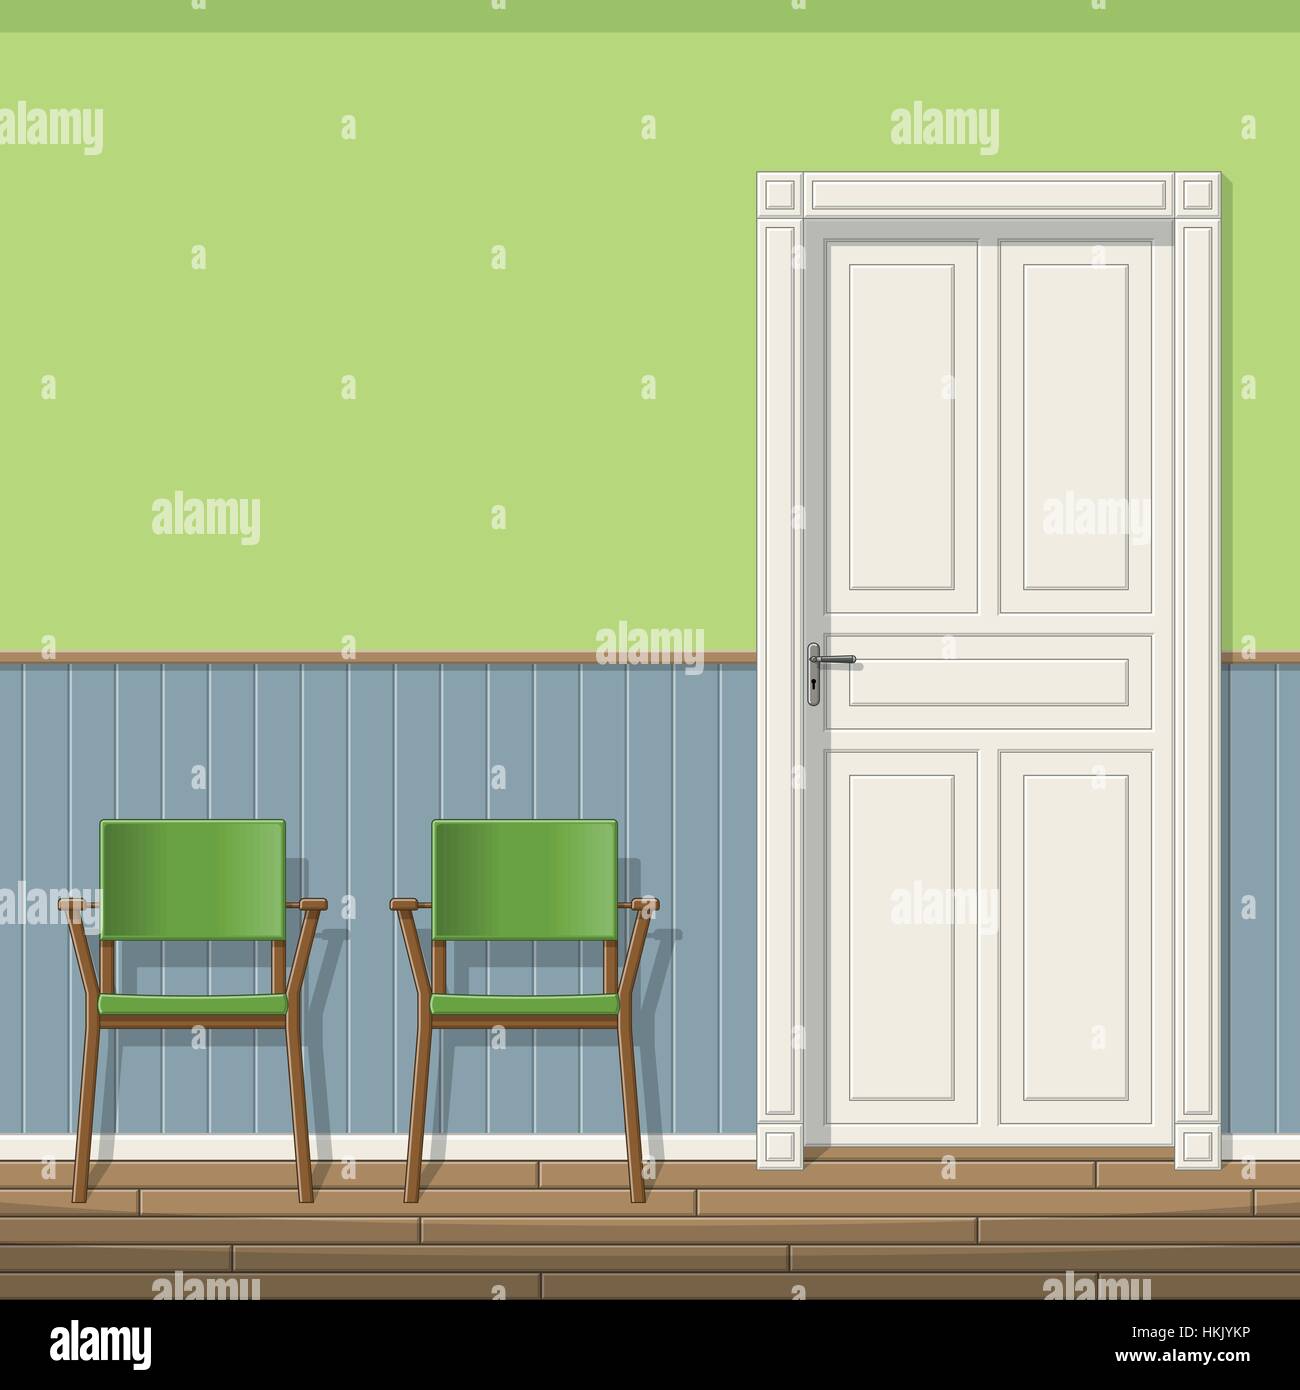 Beispiel für ein Wartezimmer mit Stühlen Stock Vektor